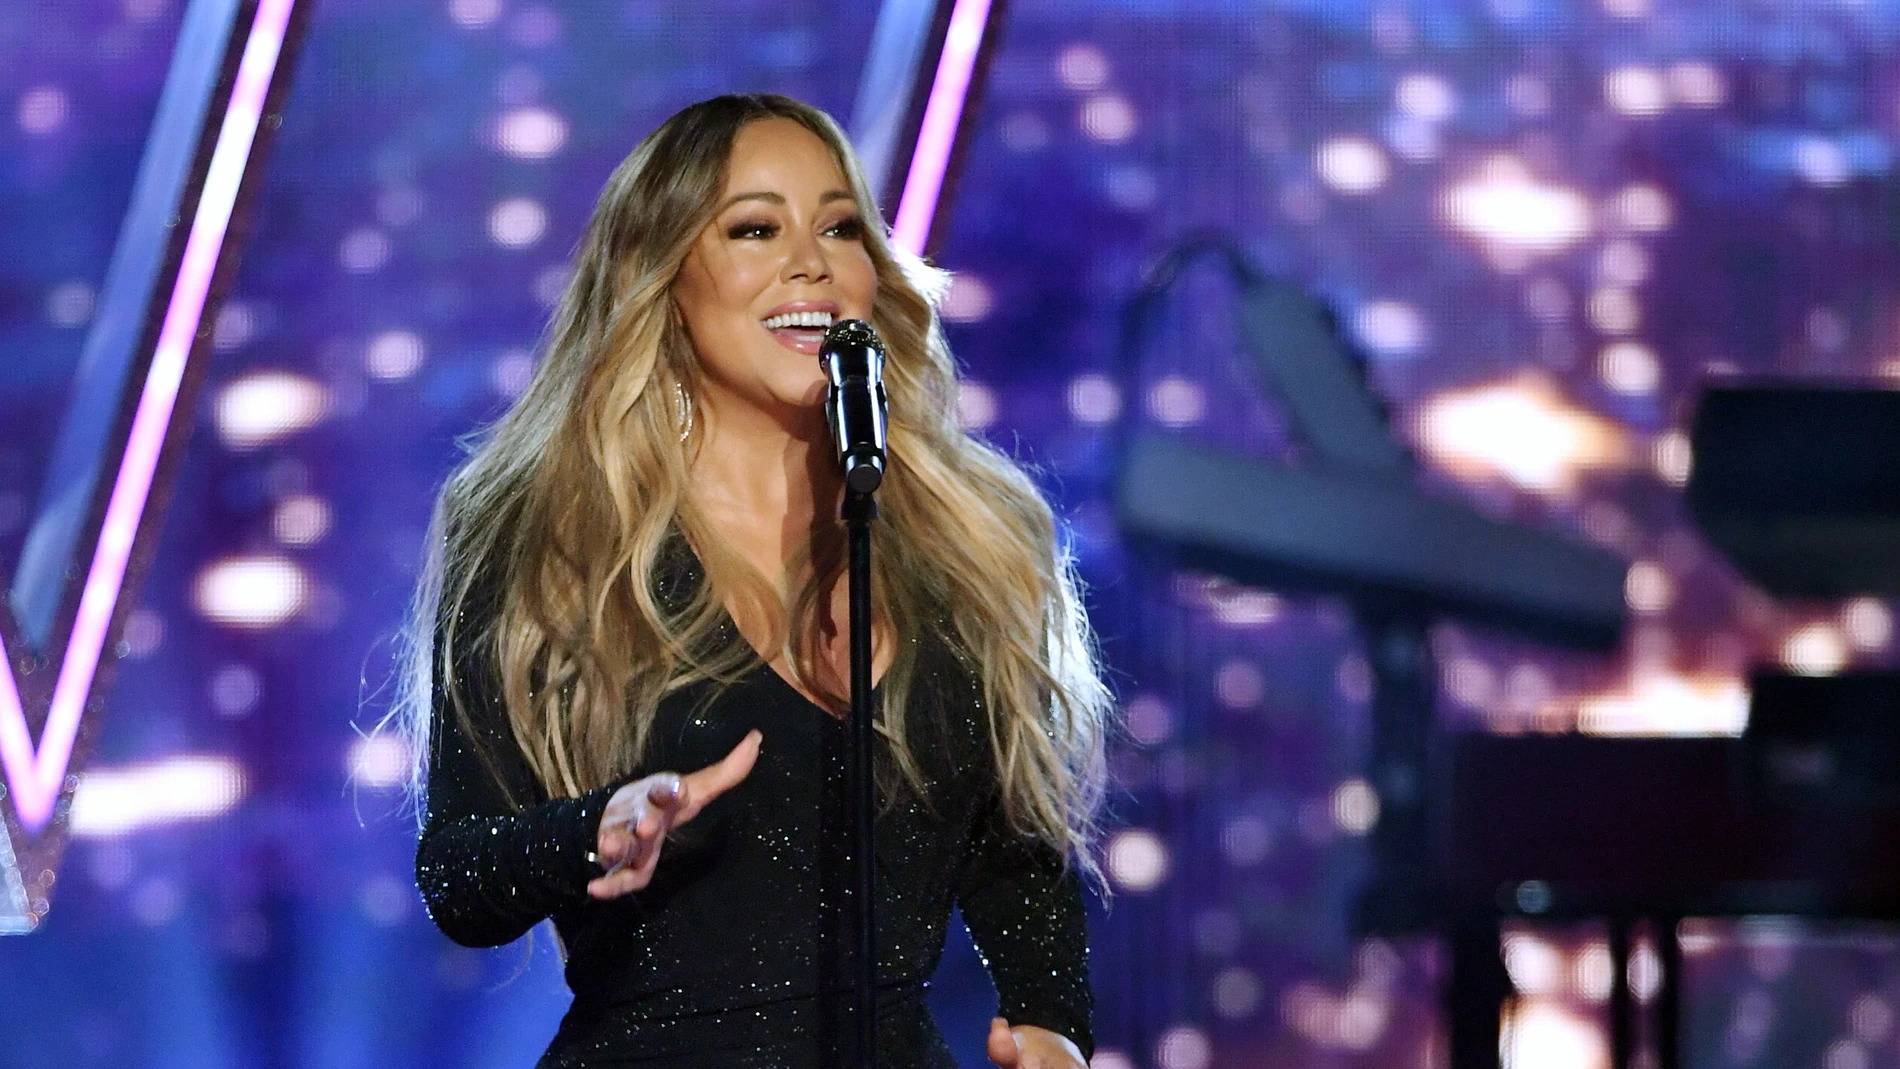 Un bar de Texas prohíbe escuchar All I Want For Christmas Is You de Mariah Carey antes del 1 de diciembre